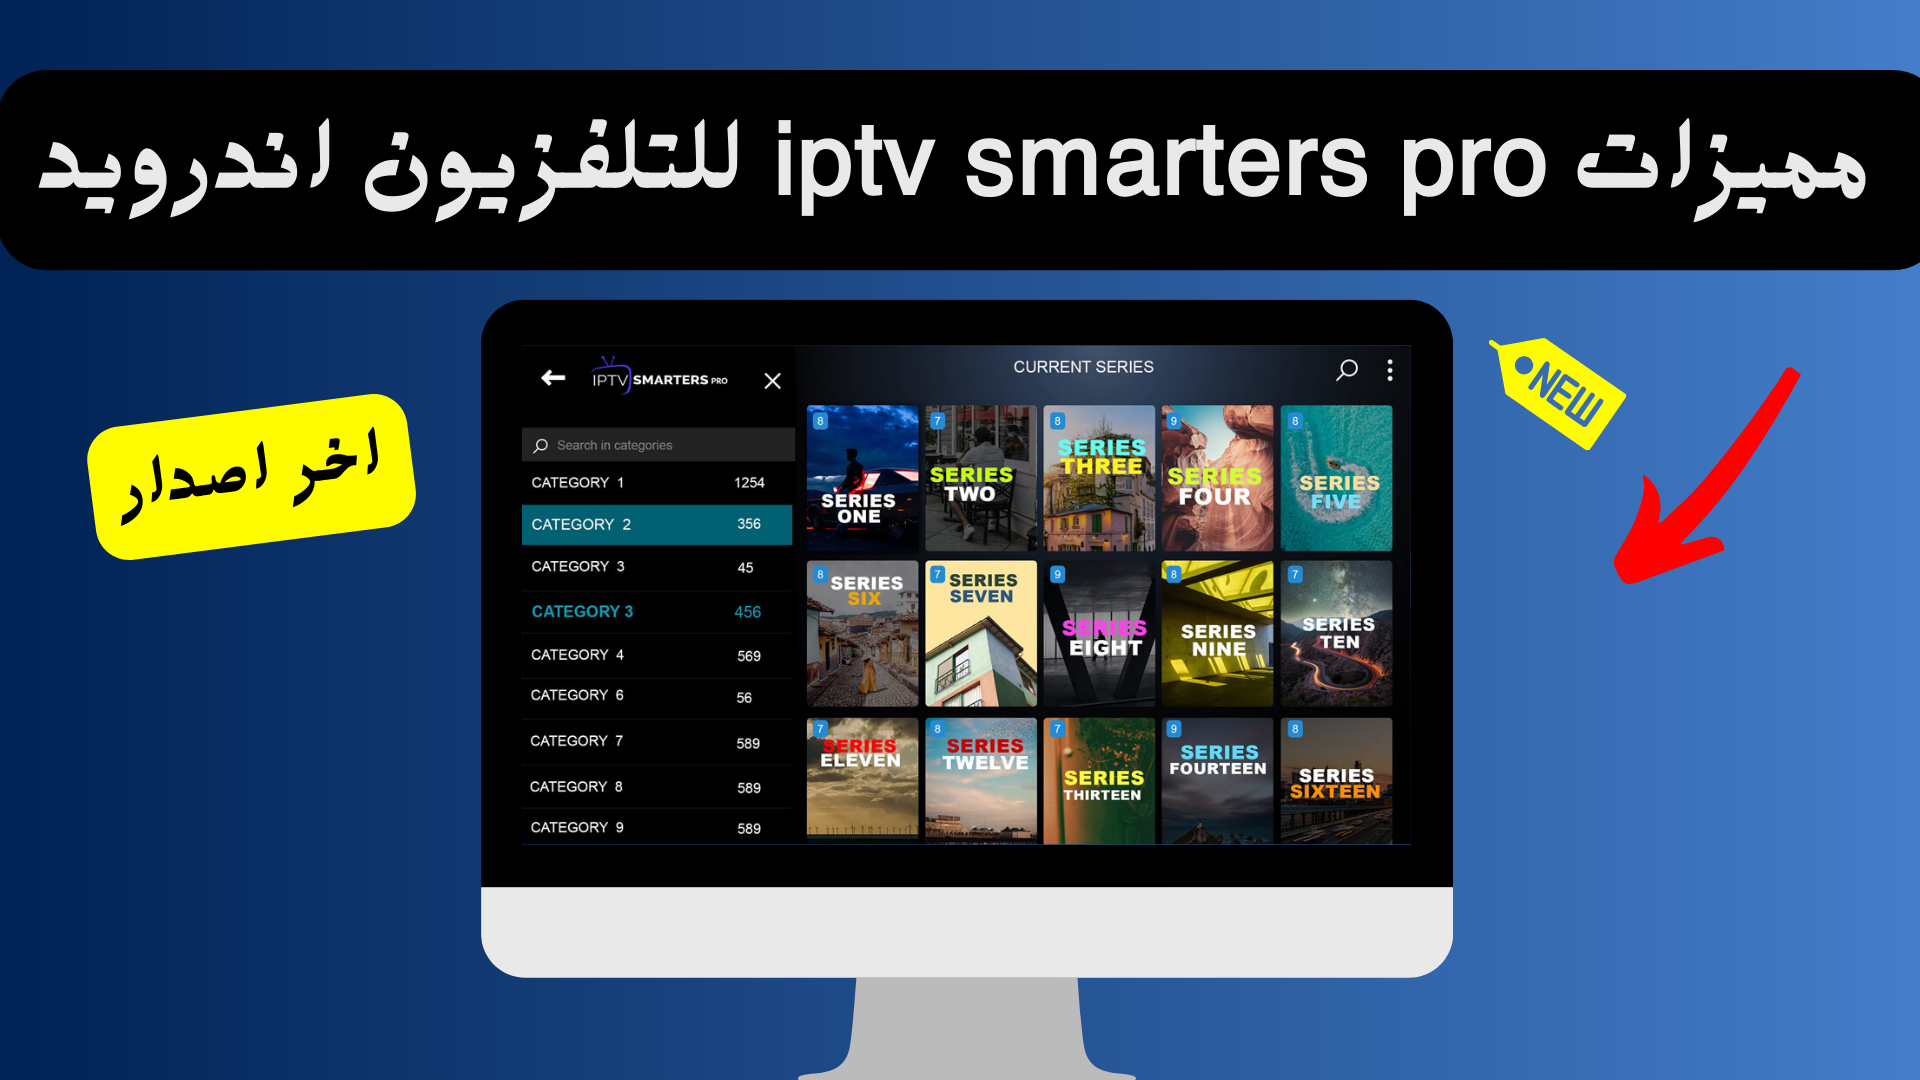 خطوات بسيطة ودقيقة تفصلك عن تحميل IPTV Smarters Pro لتلفزيونك الأندرويد. يقدم هذا الدليل المفصل كل المعلومات اللازمة لتستمتع بأفضل ما في عالم البث التلفزيوني الحديث.